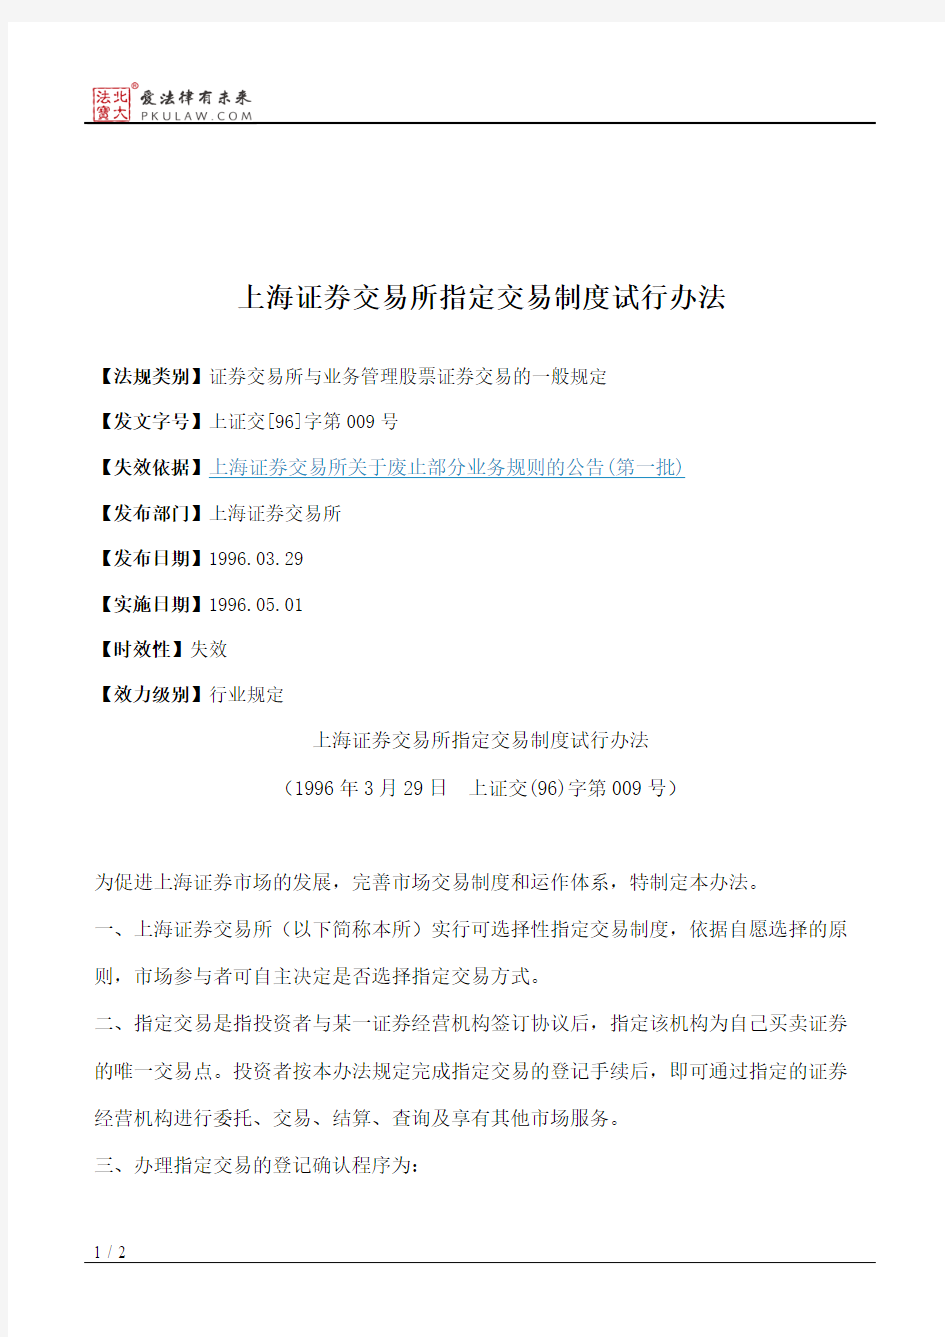 上海证券交易所指定交易制度试行办法